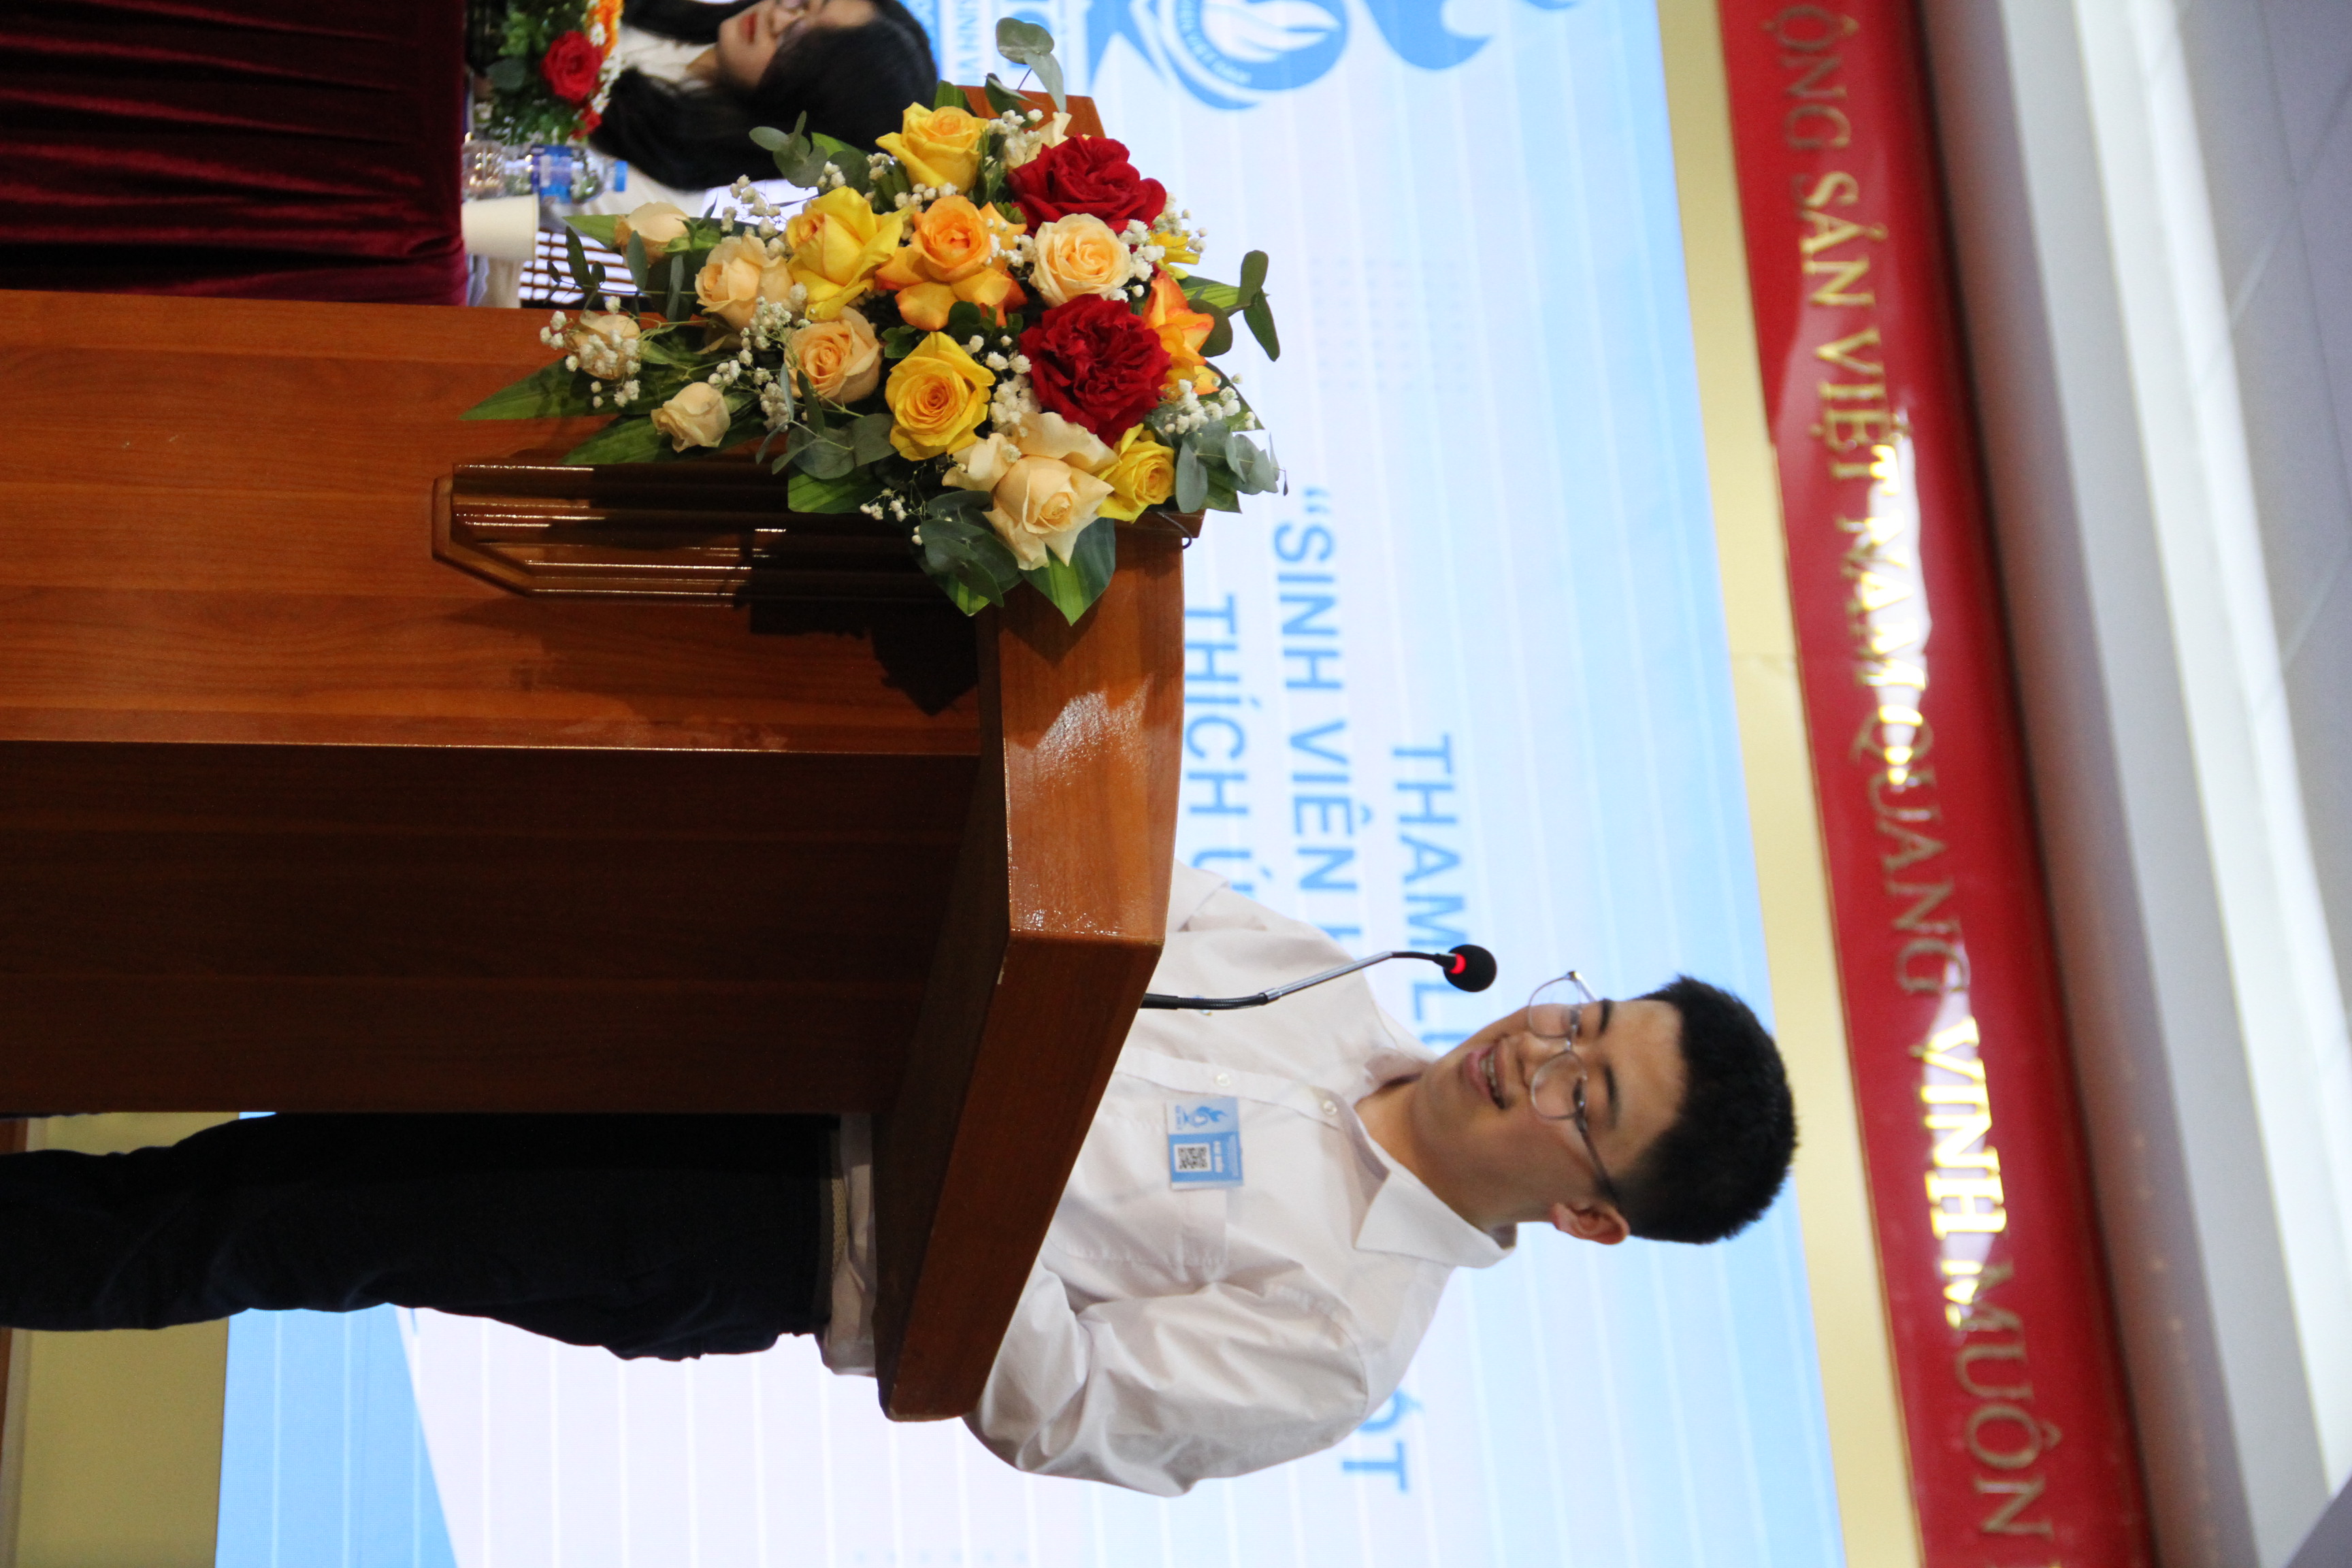 Đại hội Đại biểu Hội Sinh viên Việt Nam Trường Đại học Khoa học Tự nhiên lần thứ X, nhiệm kỳ 2023 - 2025: Rèn luyện bản lĩnh - Khơi nguồn sáng tạo - Vững bước tương lai